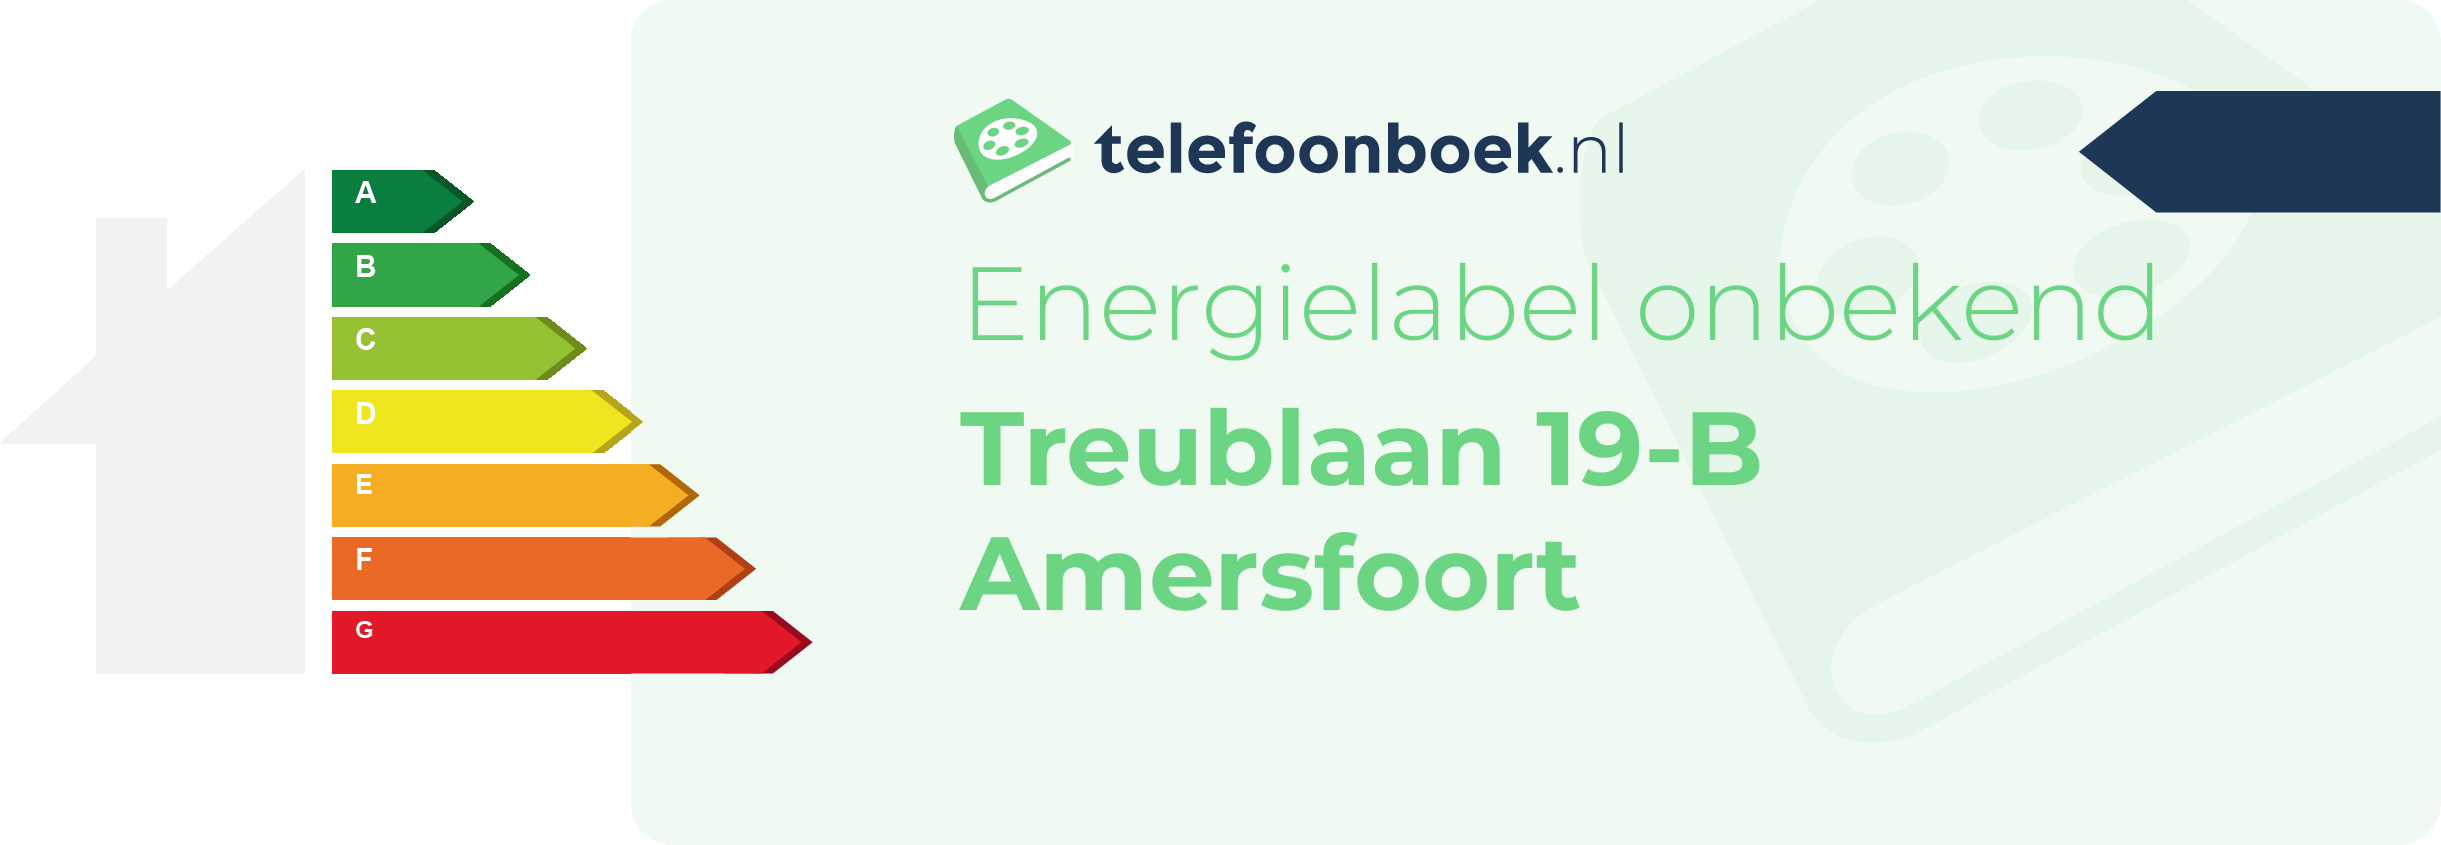 Energielabel Treublaan 19-B Amersfoort